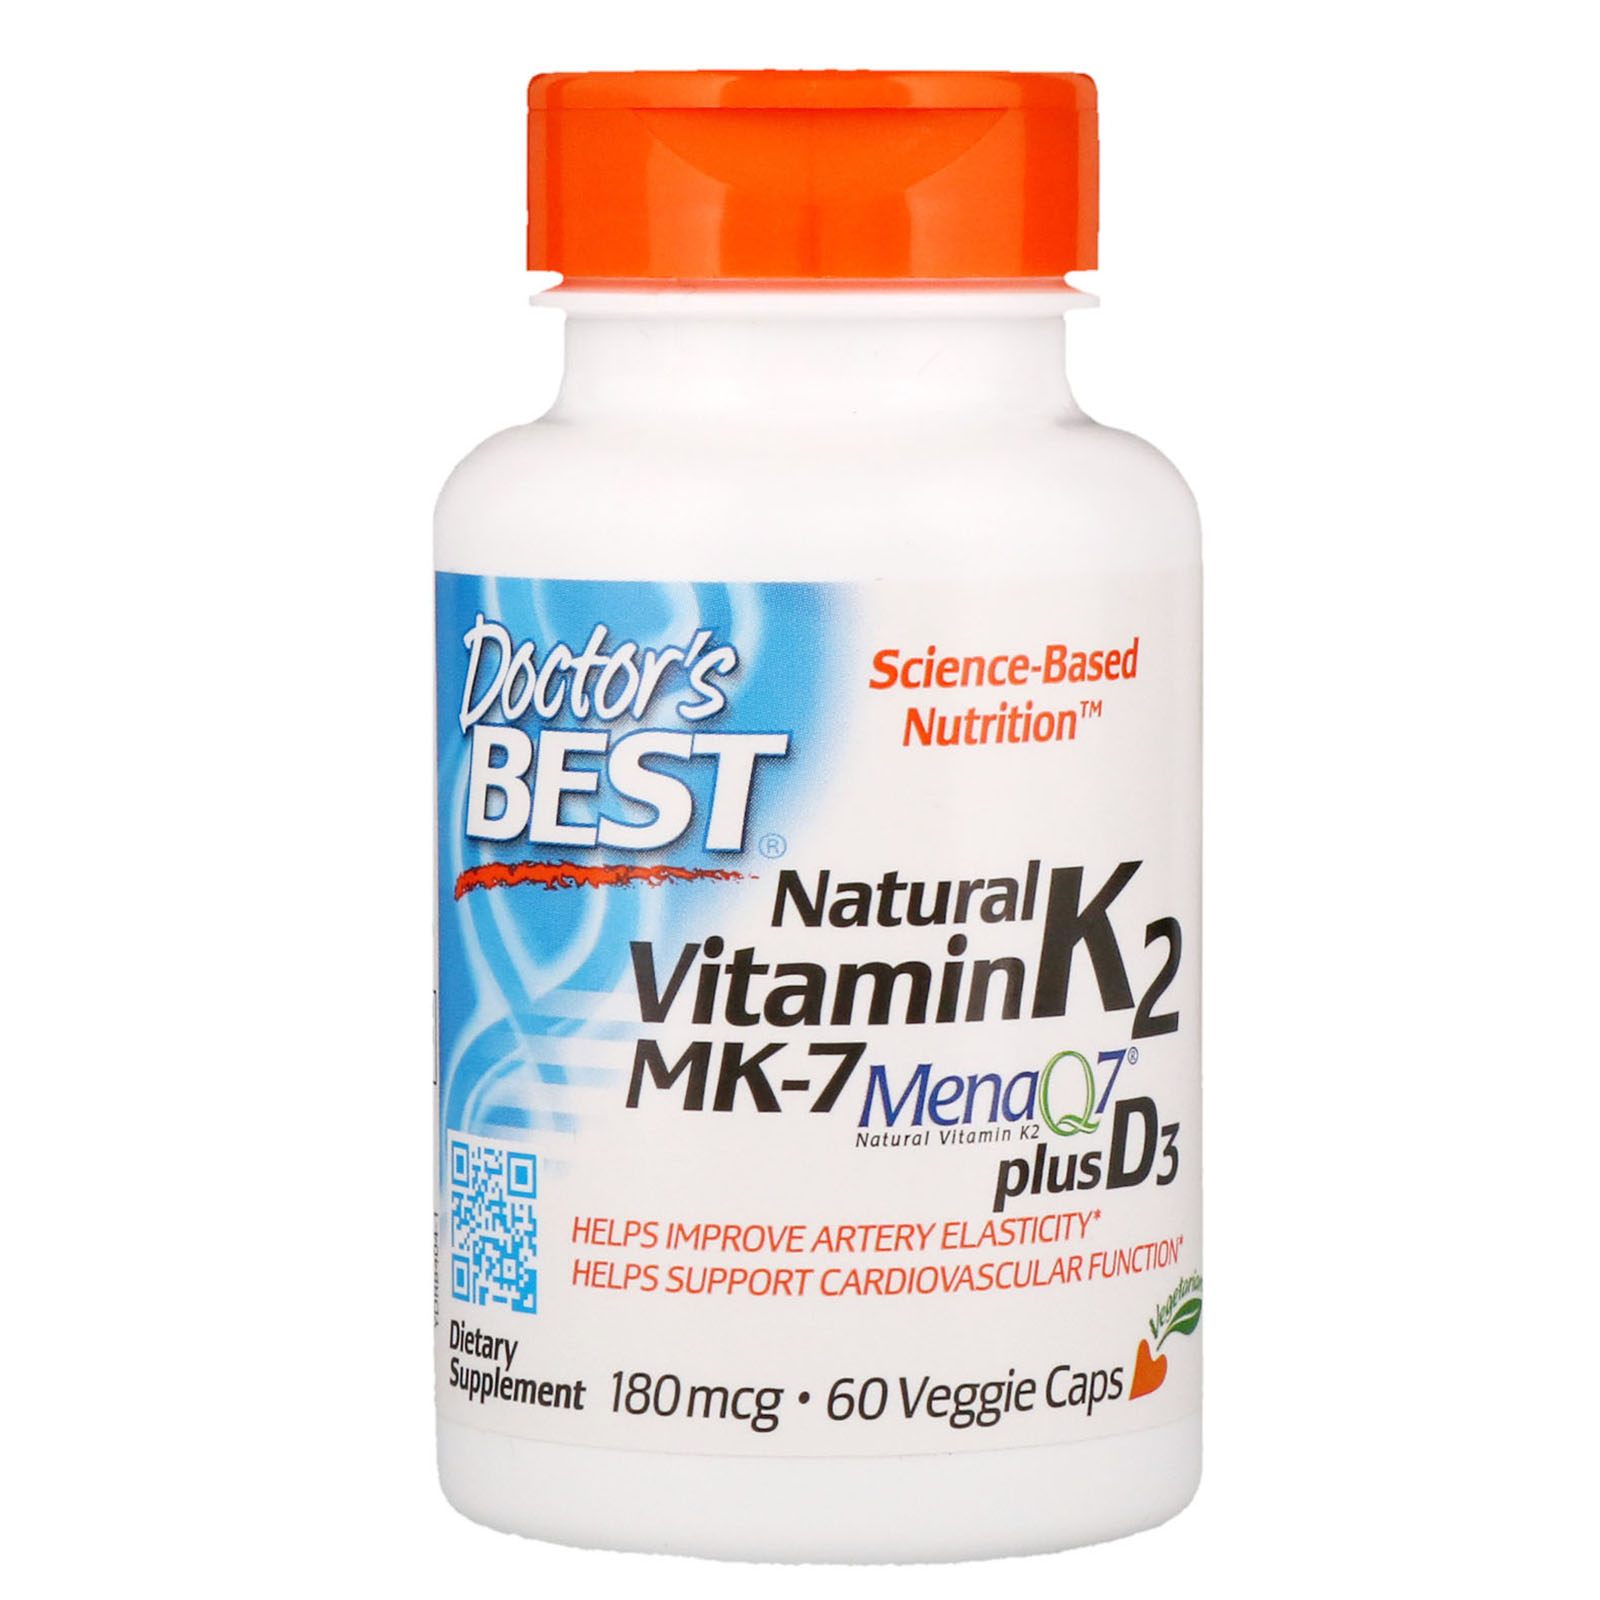 Doctors Best Natural Vitamin K2 Mk 7 With Menaq7 Plus